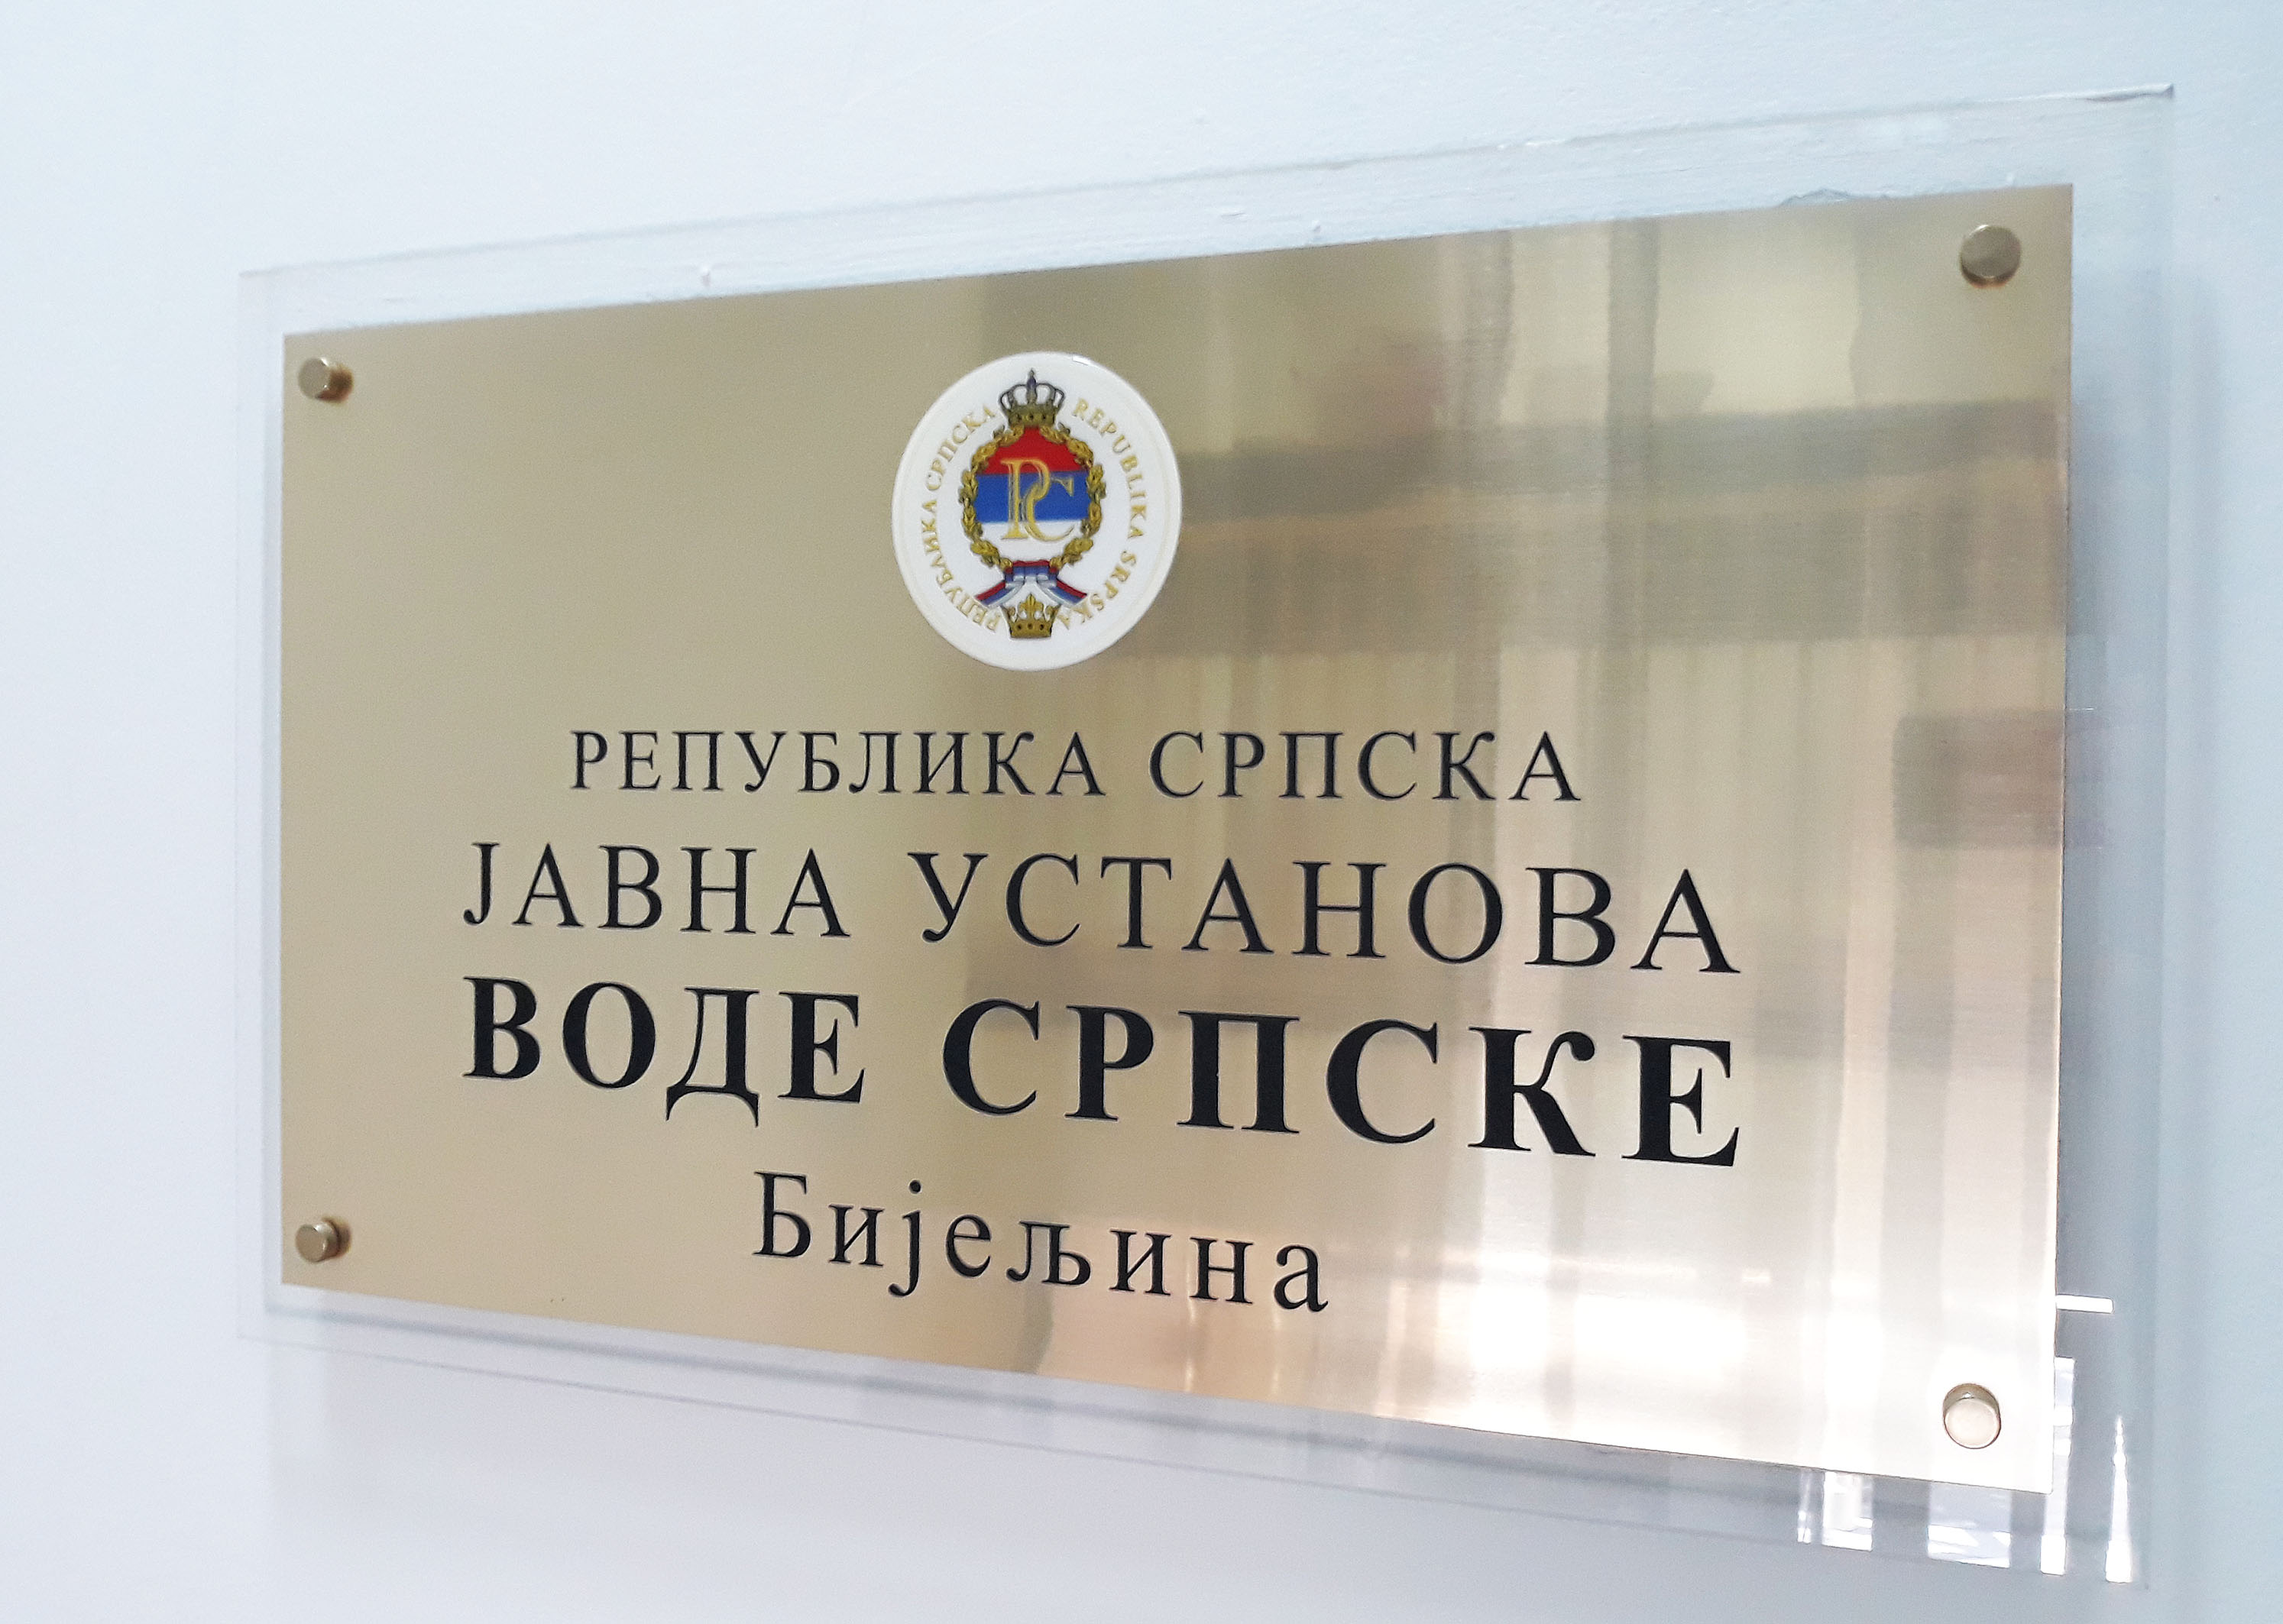 Raspisan konkurs za izradu idejnog rješenja poslovne zgrade JU „Vode Srpske“ Bijeljina